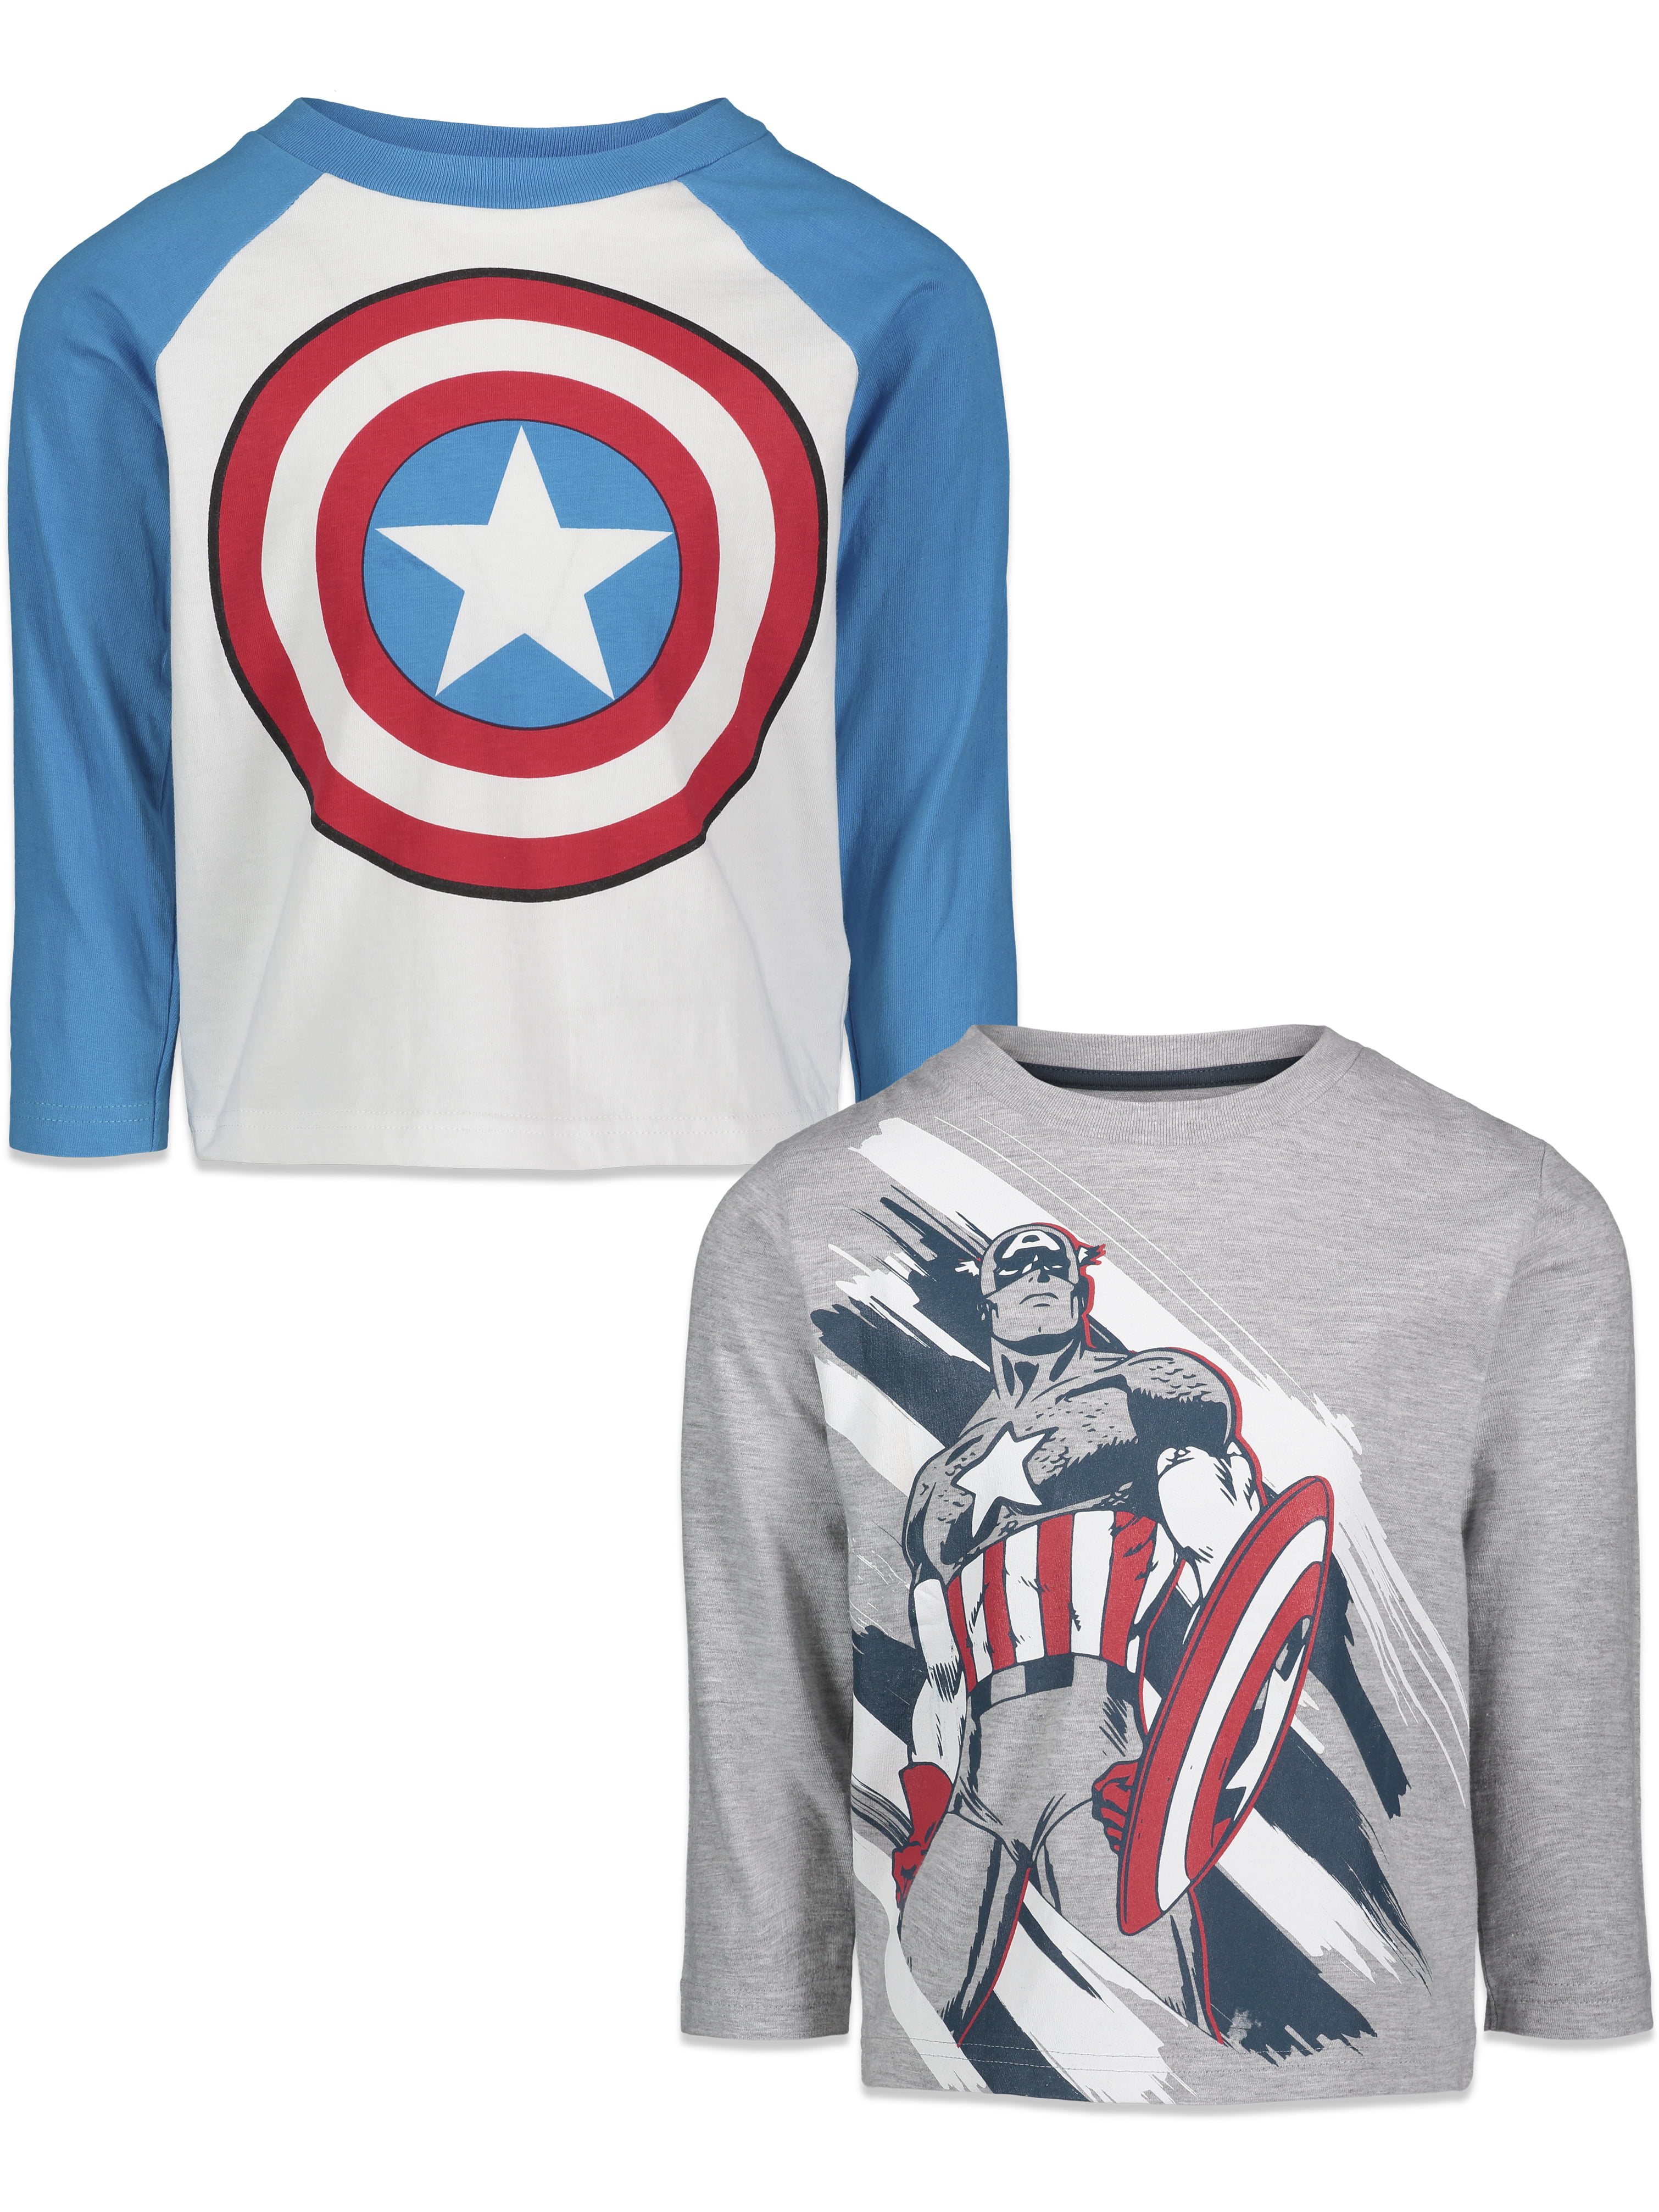 Marvel Captain America Boys T-Shirt 2T-7 NEW